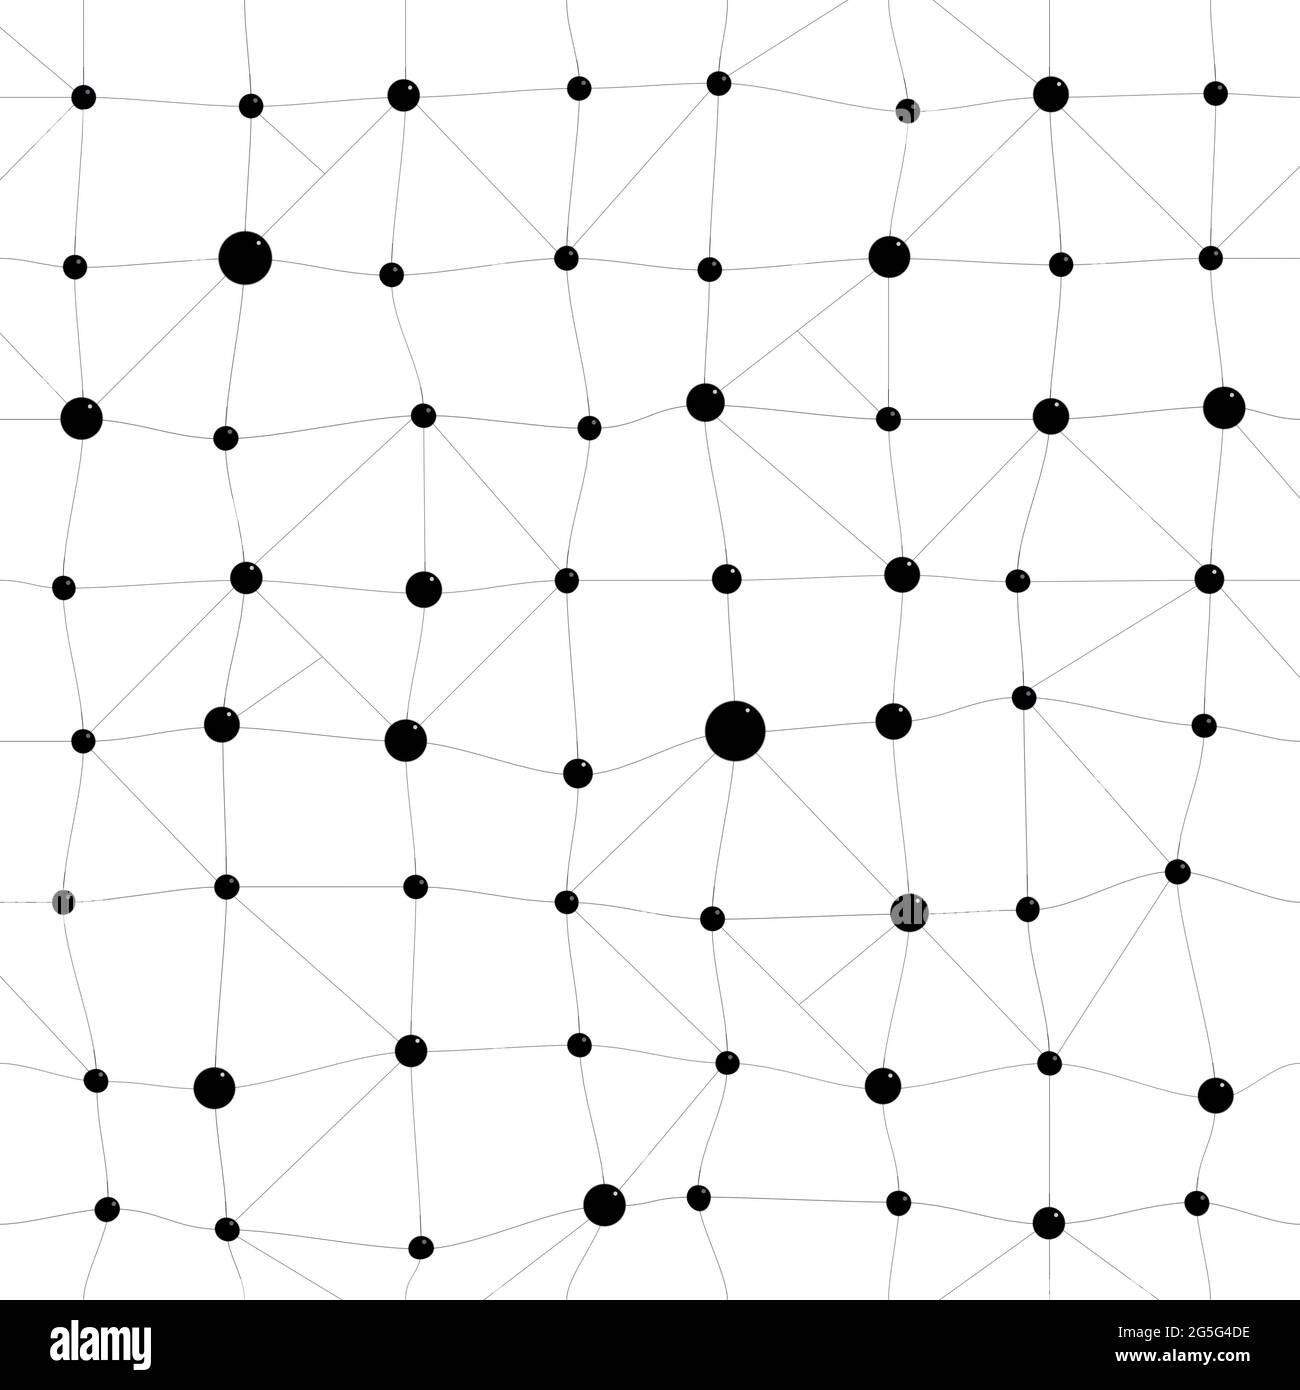 Motif carré, torsadé ou grille de points et de lignes noirs sur fond blanc. Connexion abstraite, chimie, données et fond moléculaire, schéma transparent. Banque D'Images